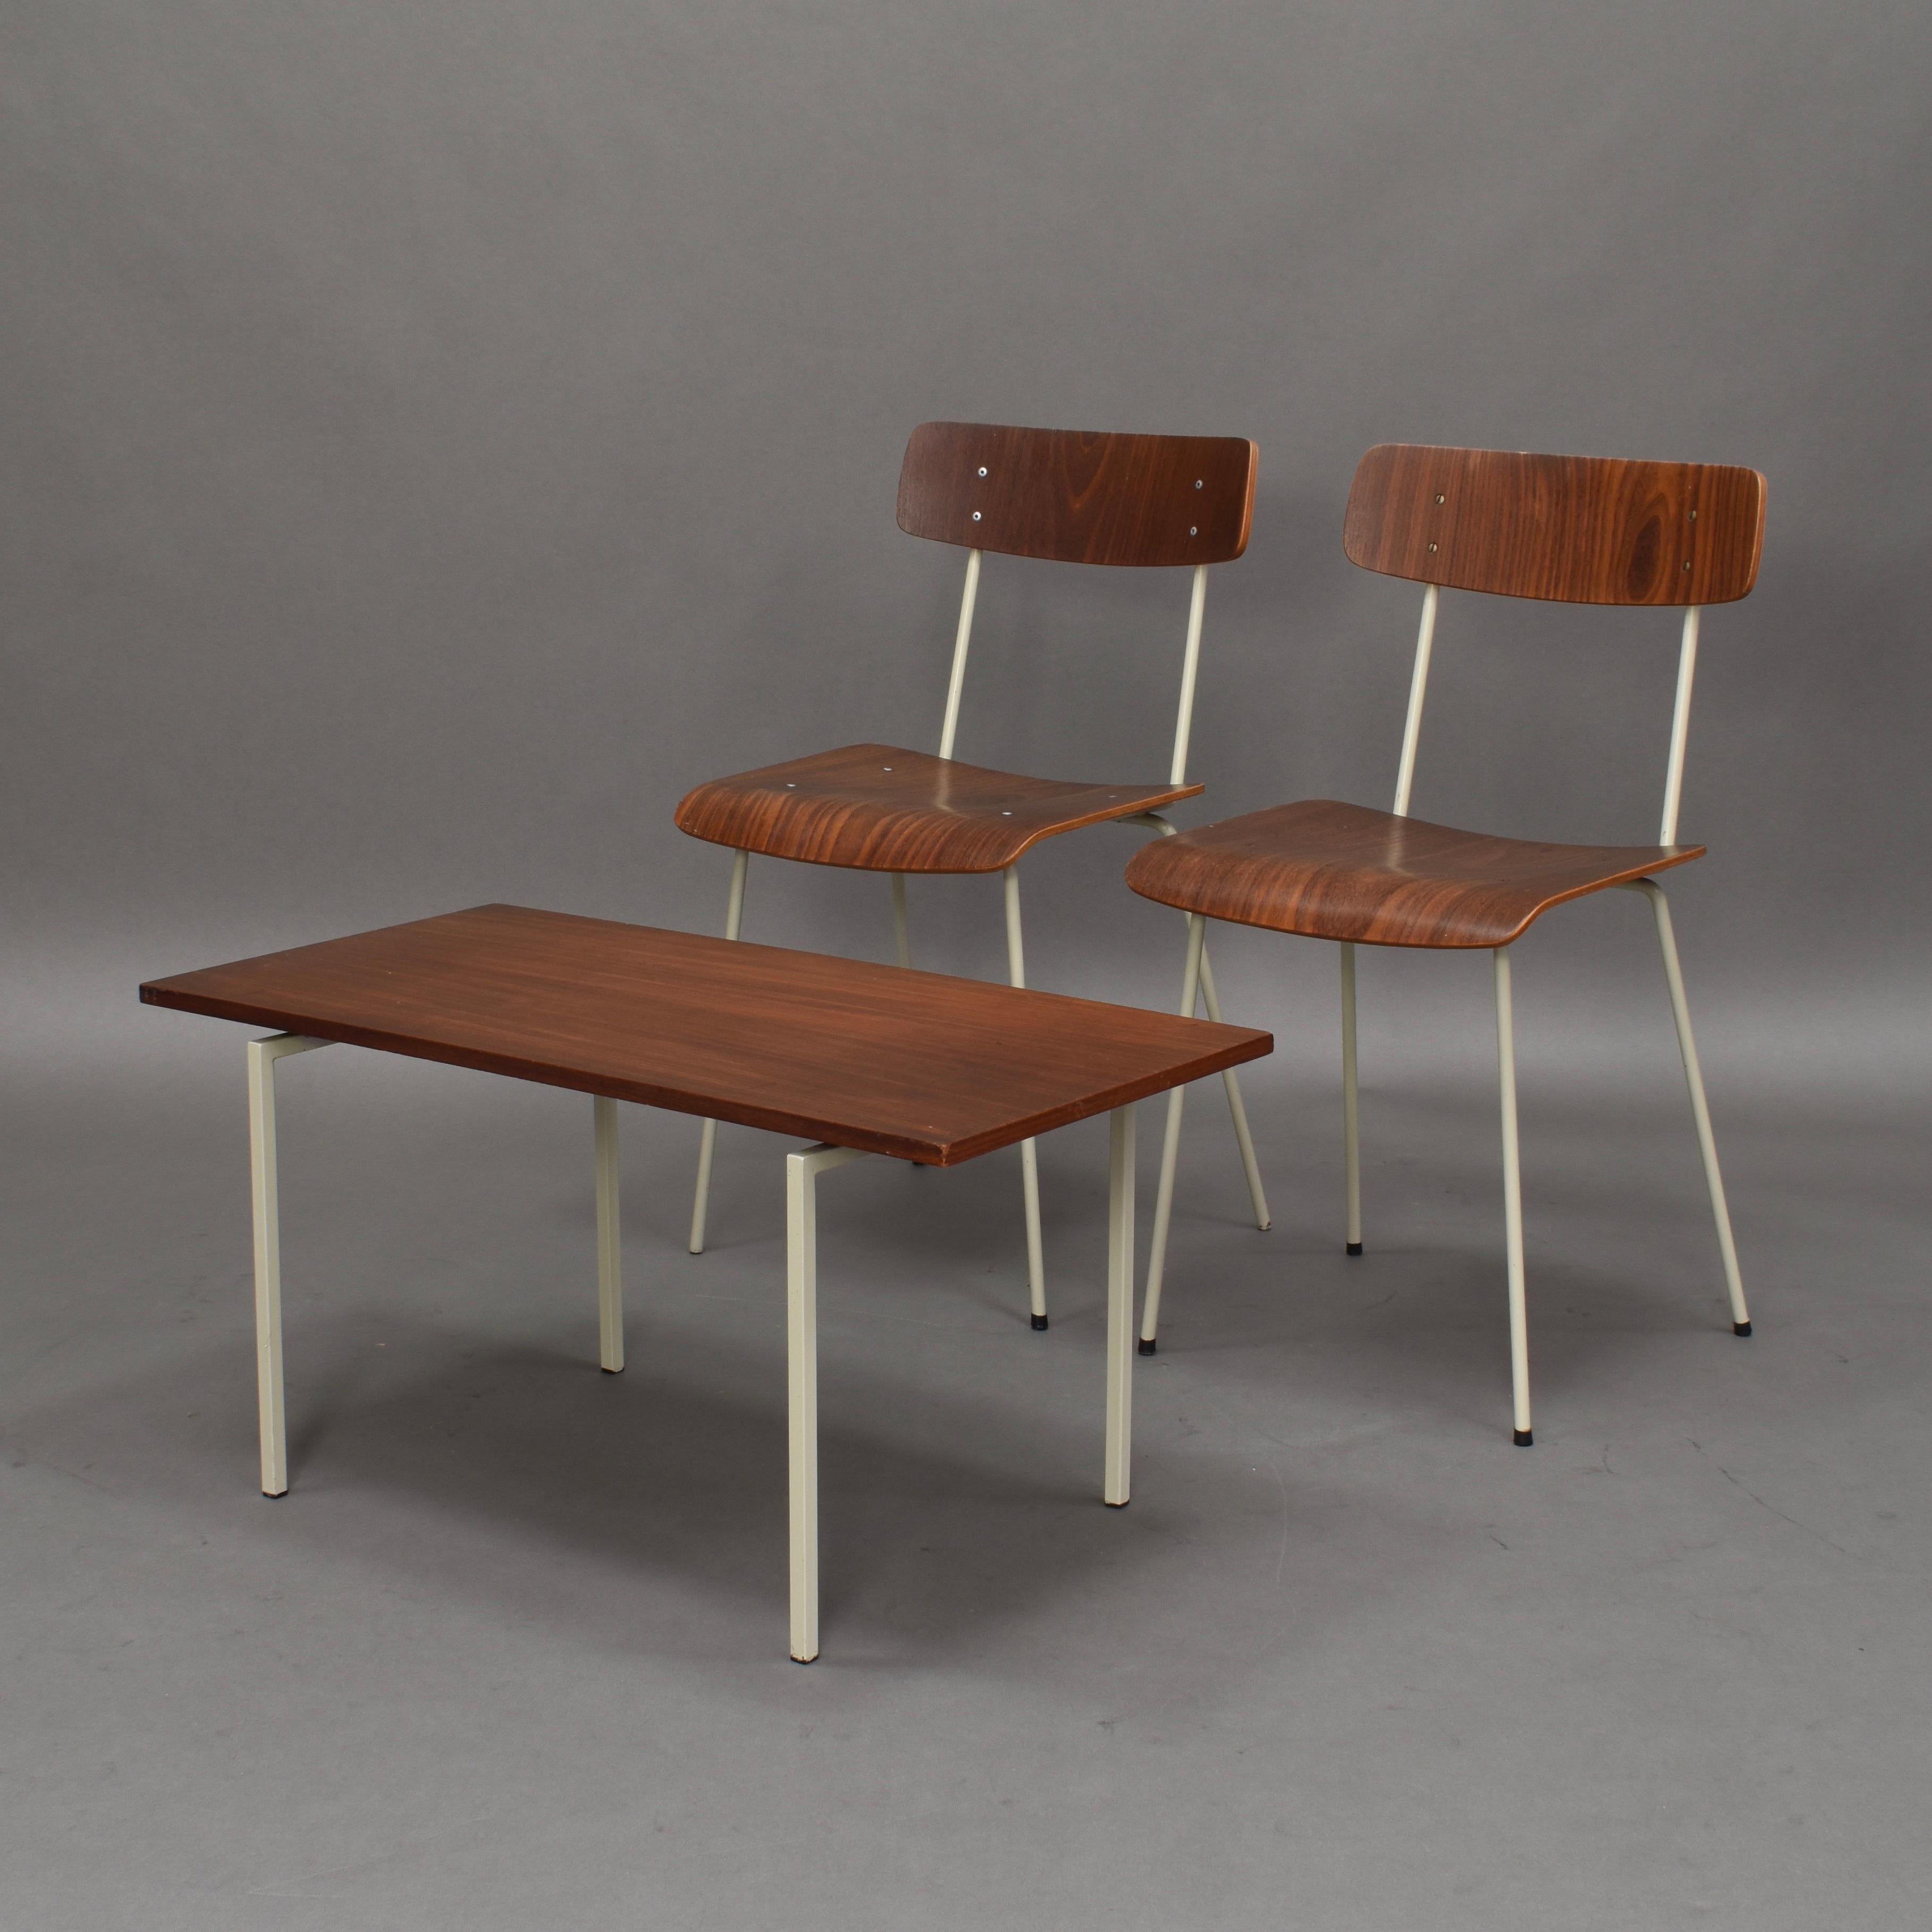 Schöne Schlafzimmer Stühle und Tisch in Teak und Metall von der niederländischen Firma AUPING.
Das Set ist in gutem Zustand mit einigen normalen Alters- und Gebrauchsspuren.